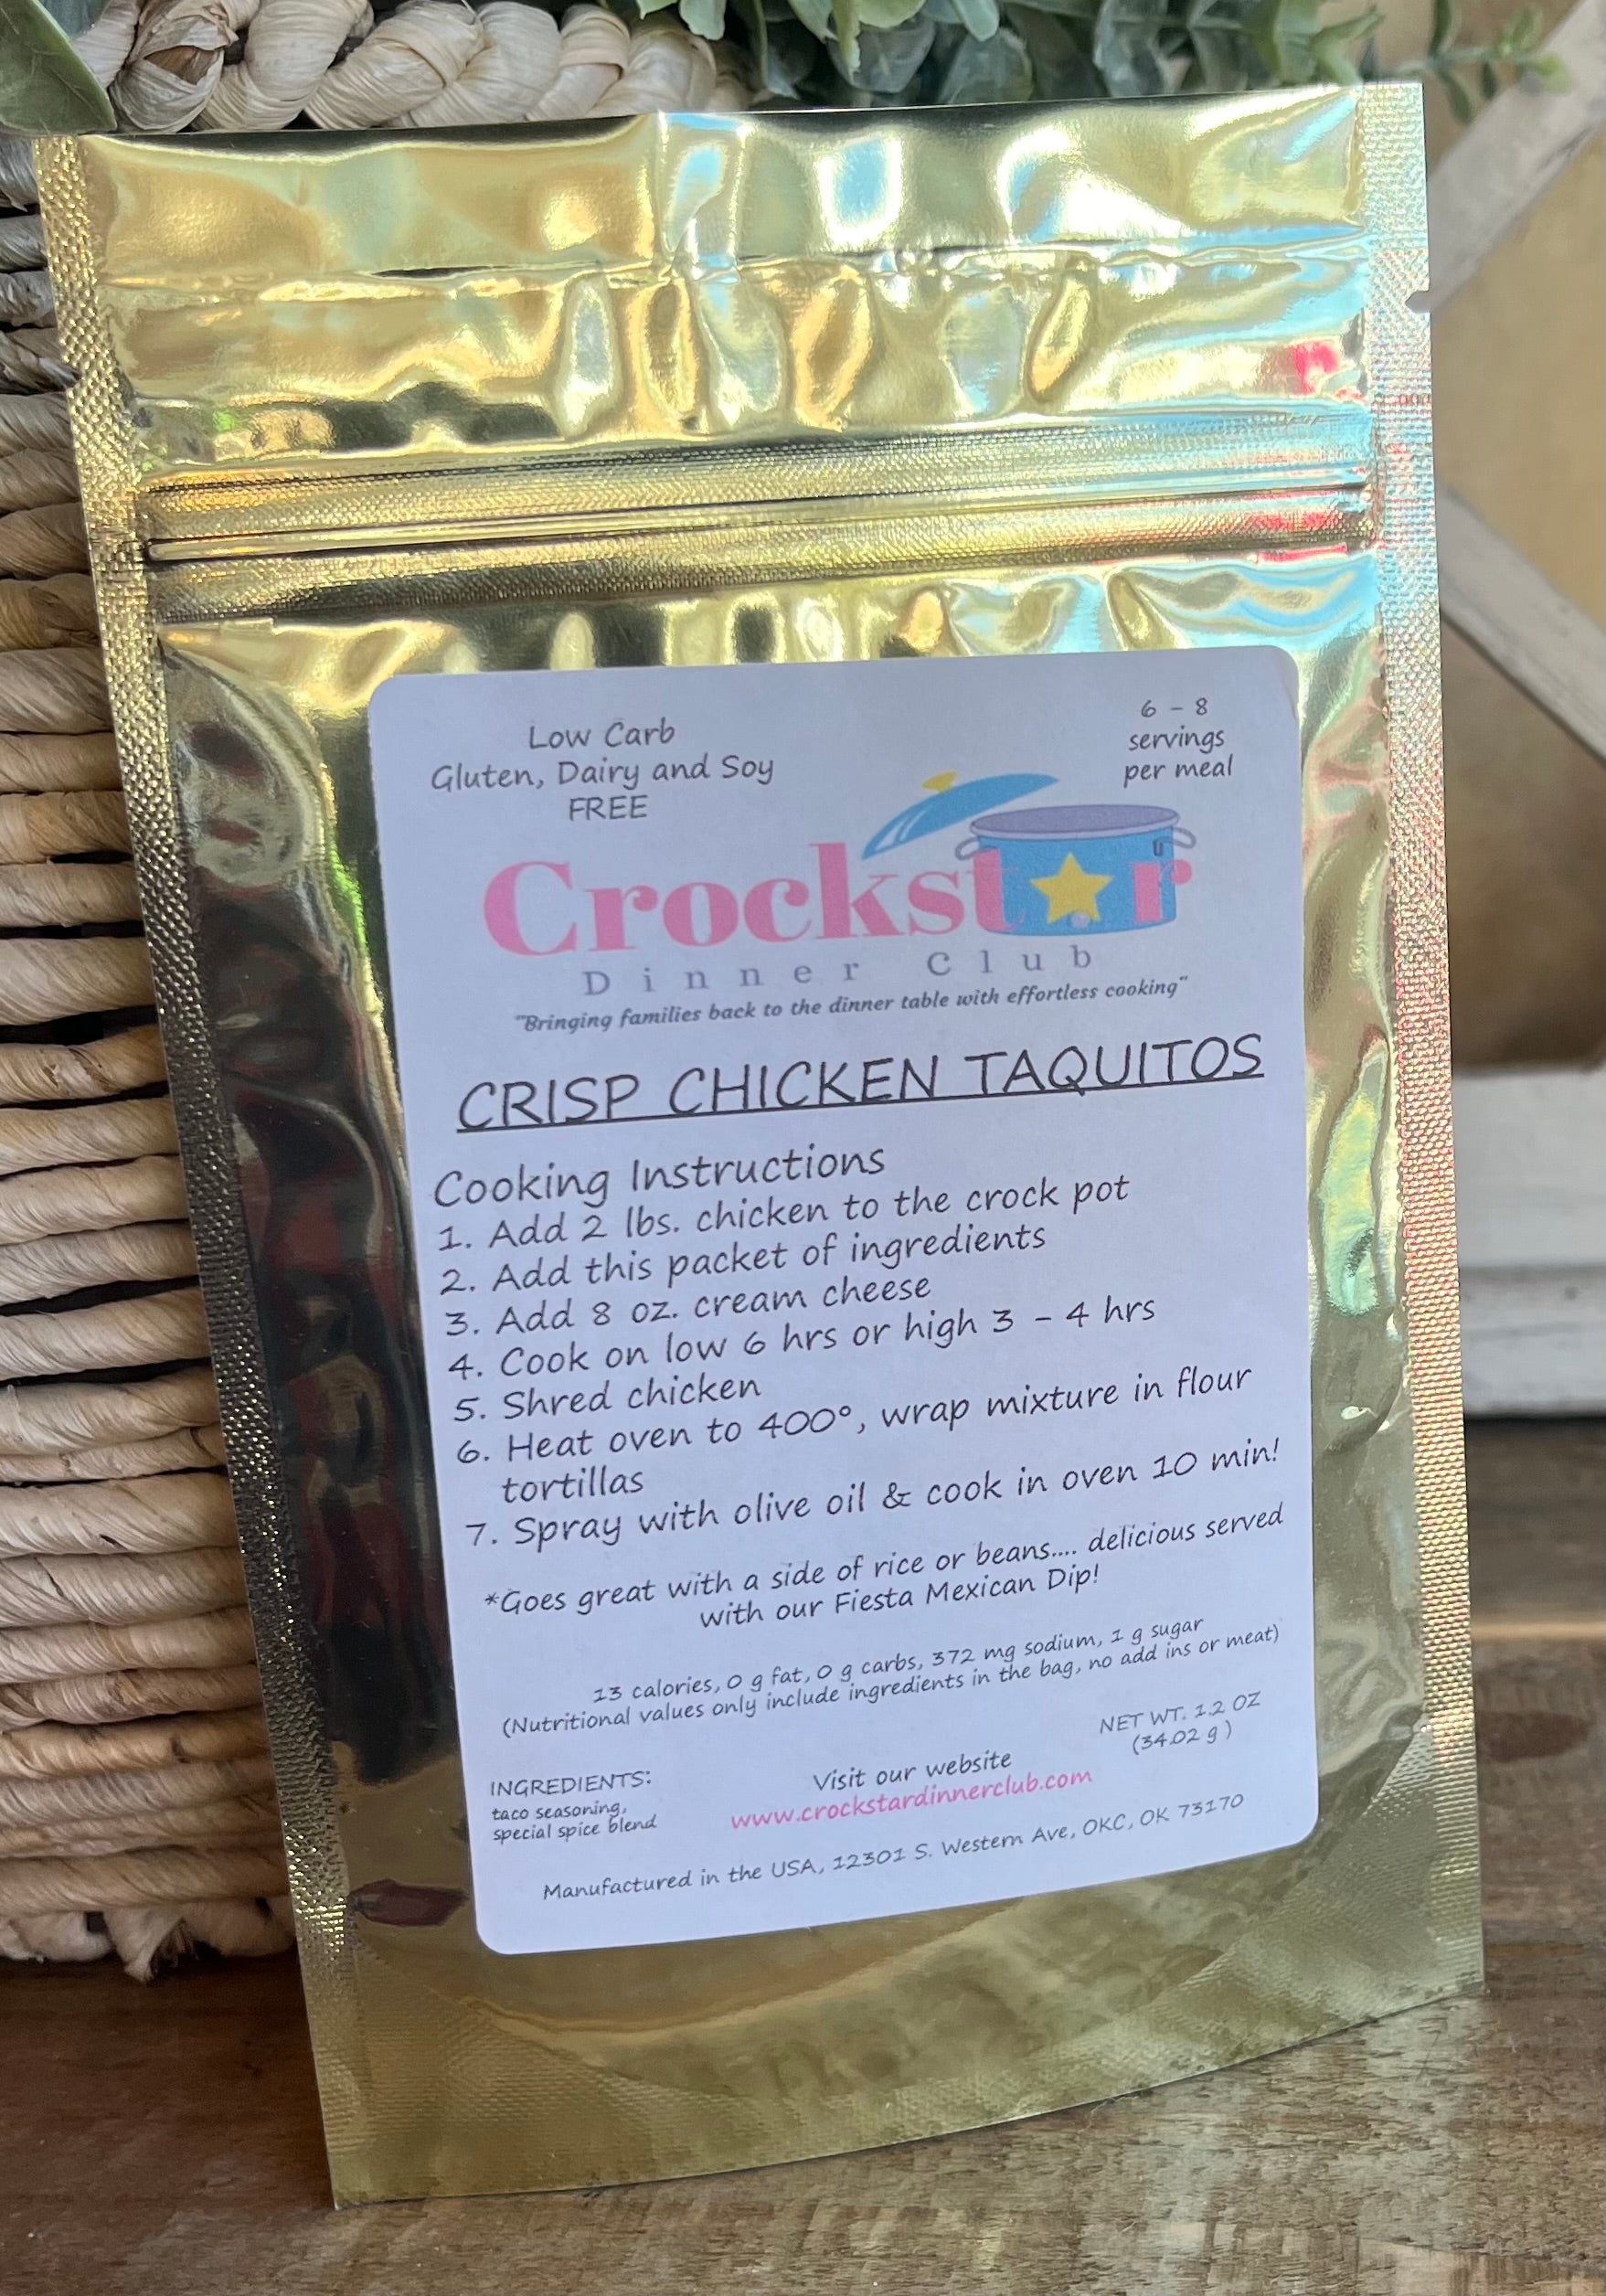 Crockstar Dinner Club - Crisp Chicken Taquitos